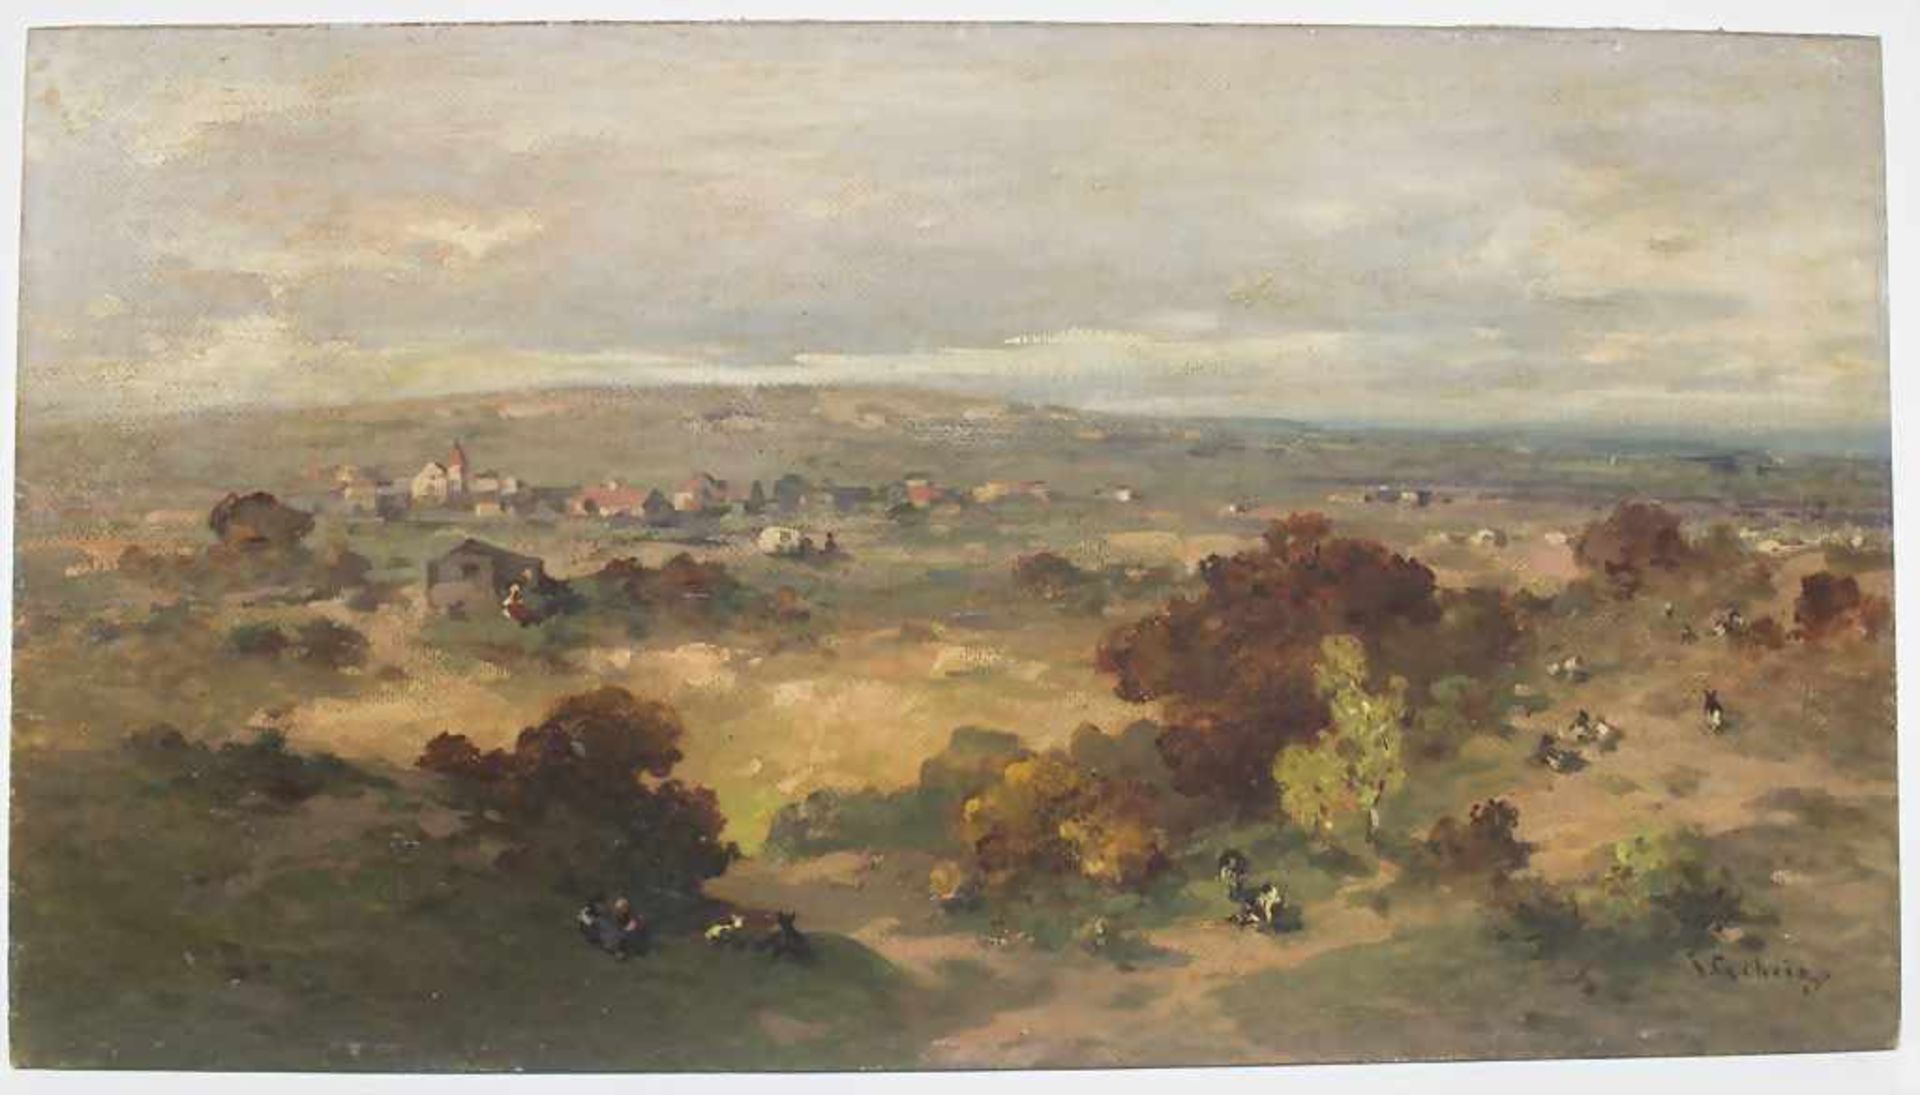 Jacob Gehrig (1846-1922), 'Weite Landschaft mit Hirtenpaar und Ziegen' / 'A landscape with shepherds